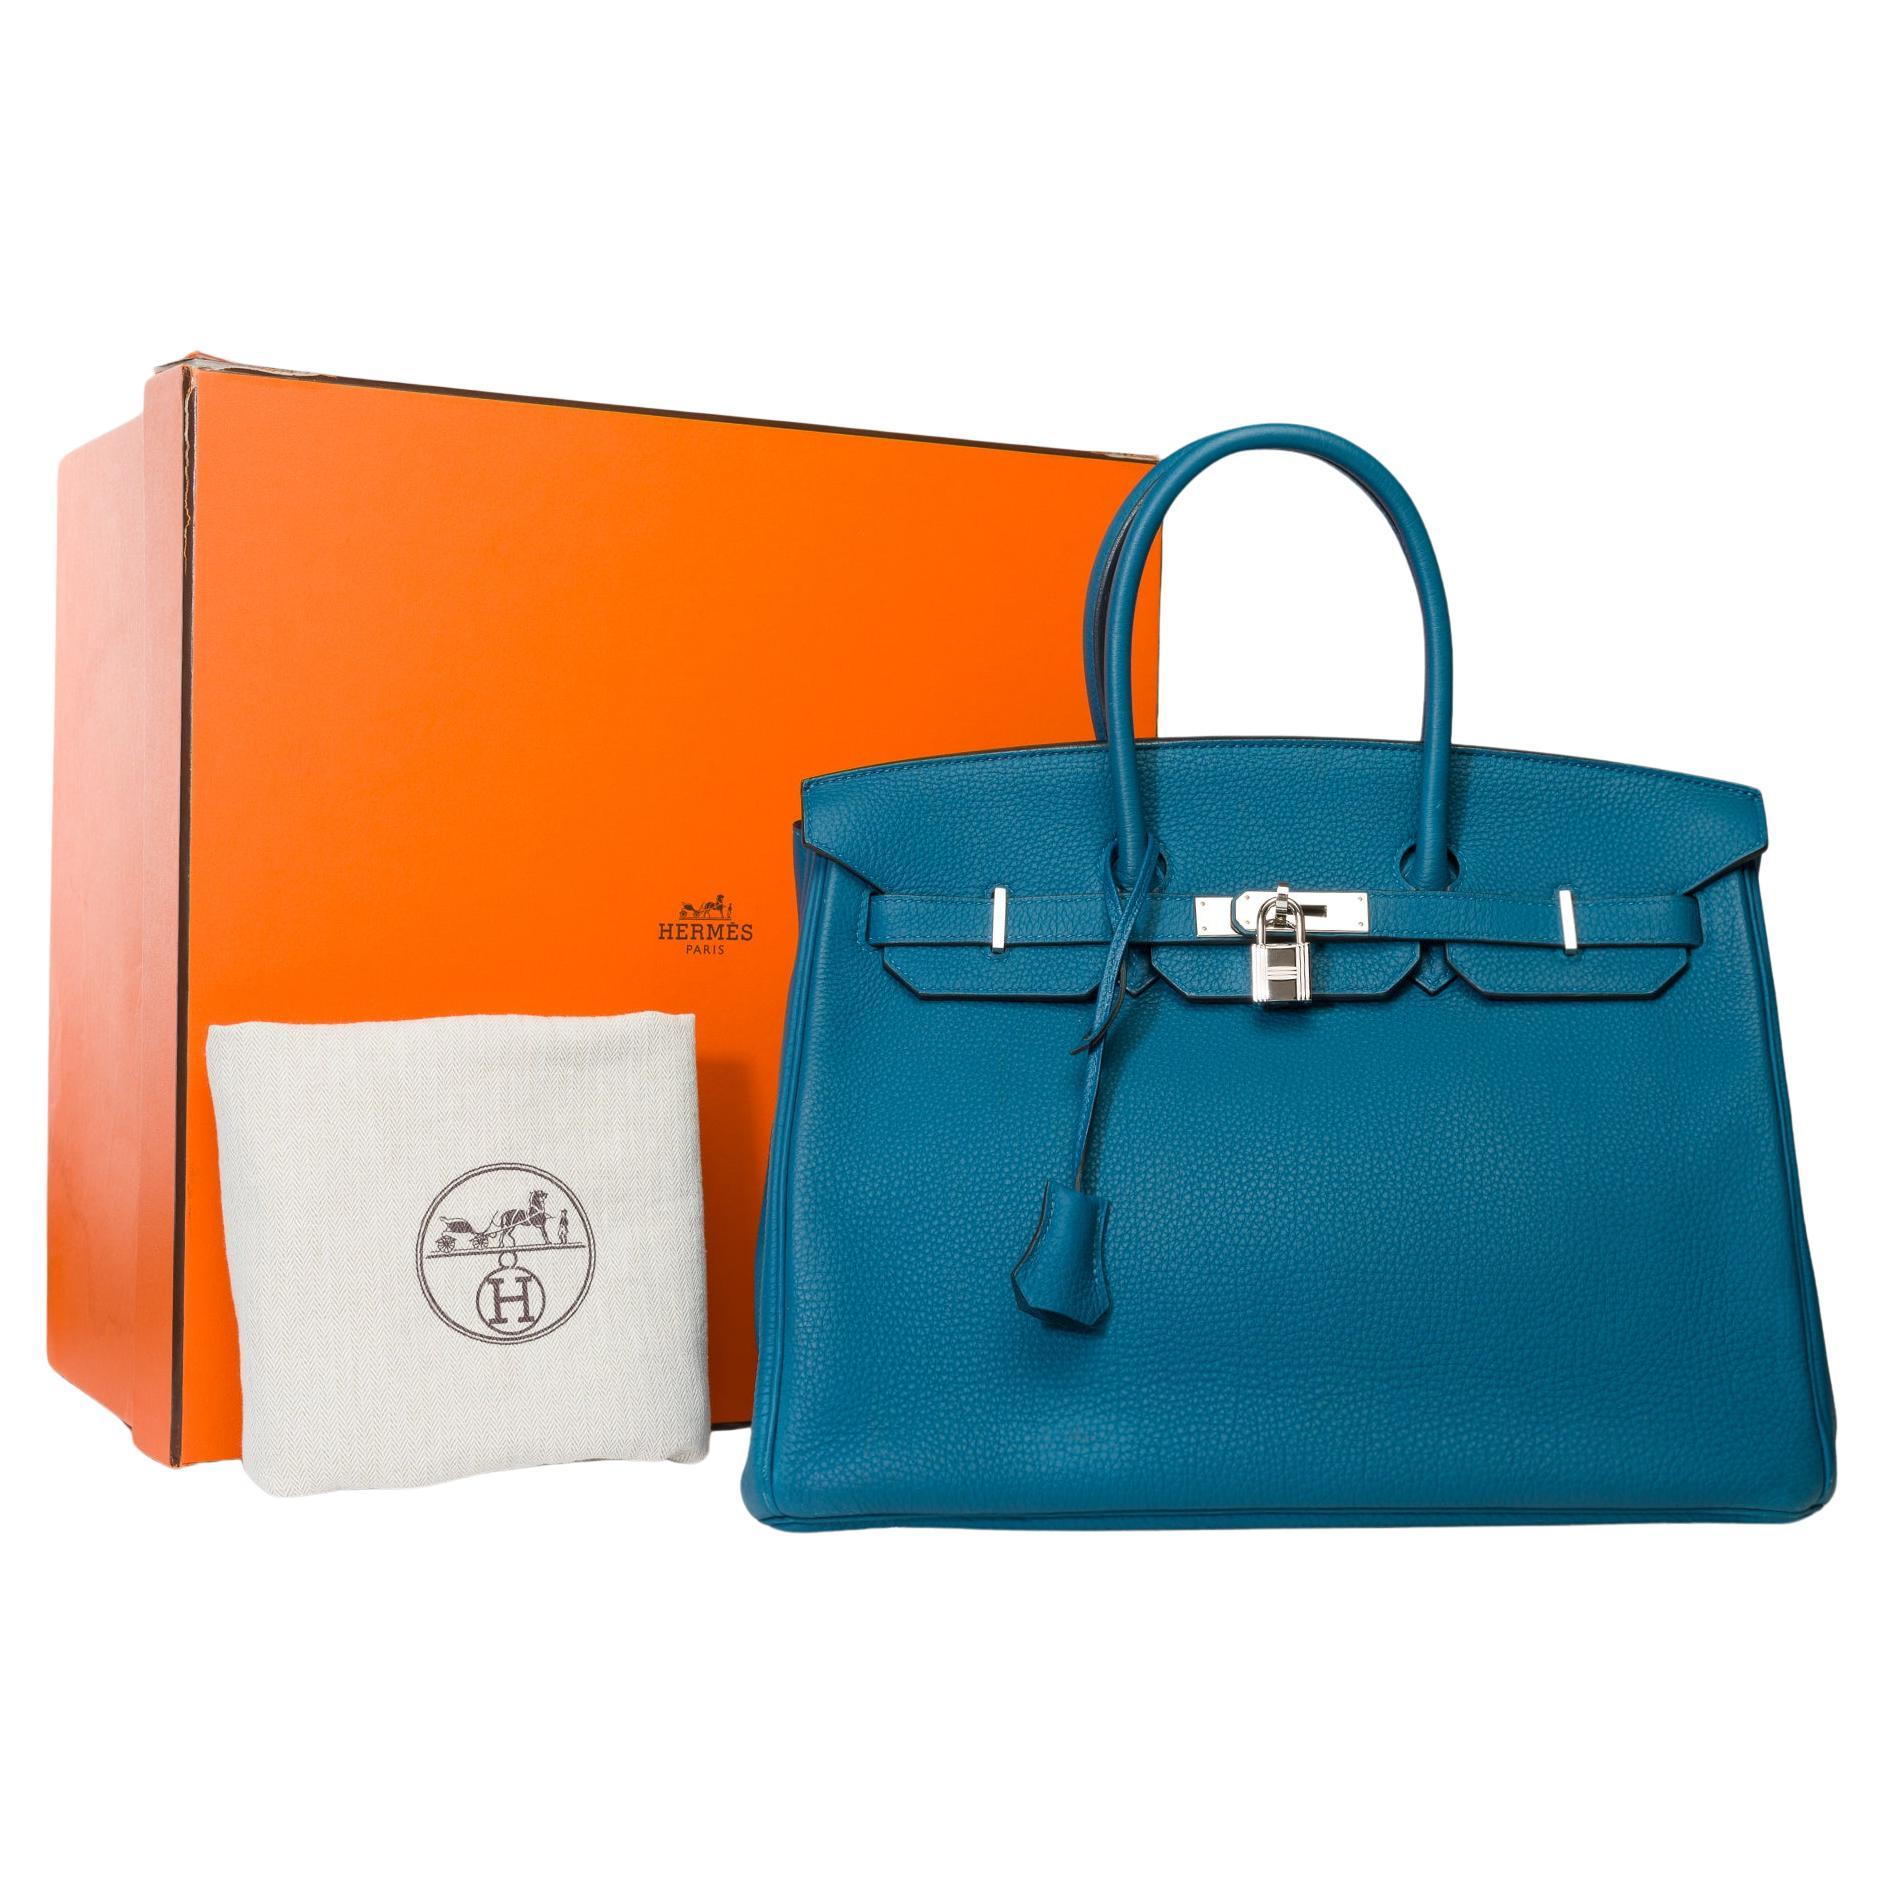 Amazing Hermes Birkin 35 handbag in Bleu Colvert Togo leather, SHW For Sale